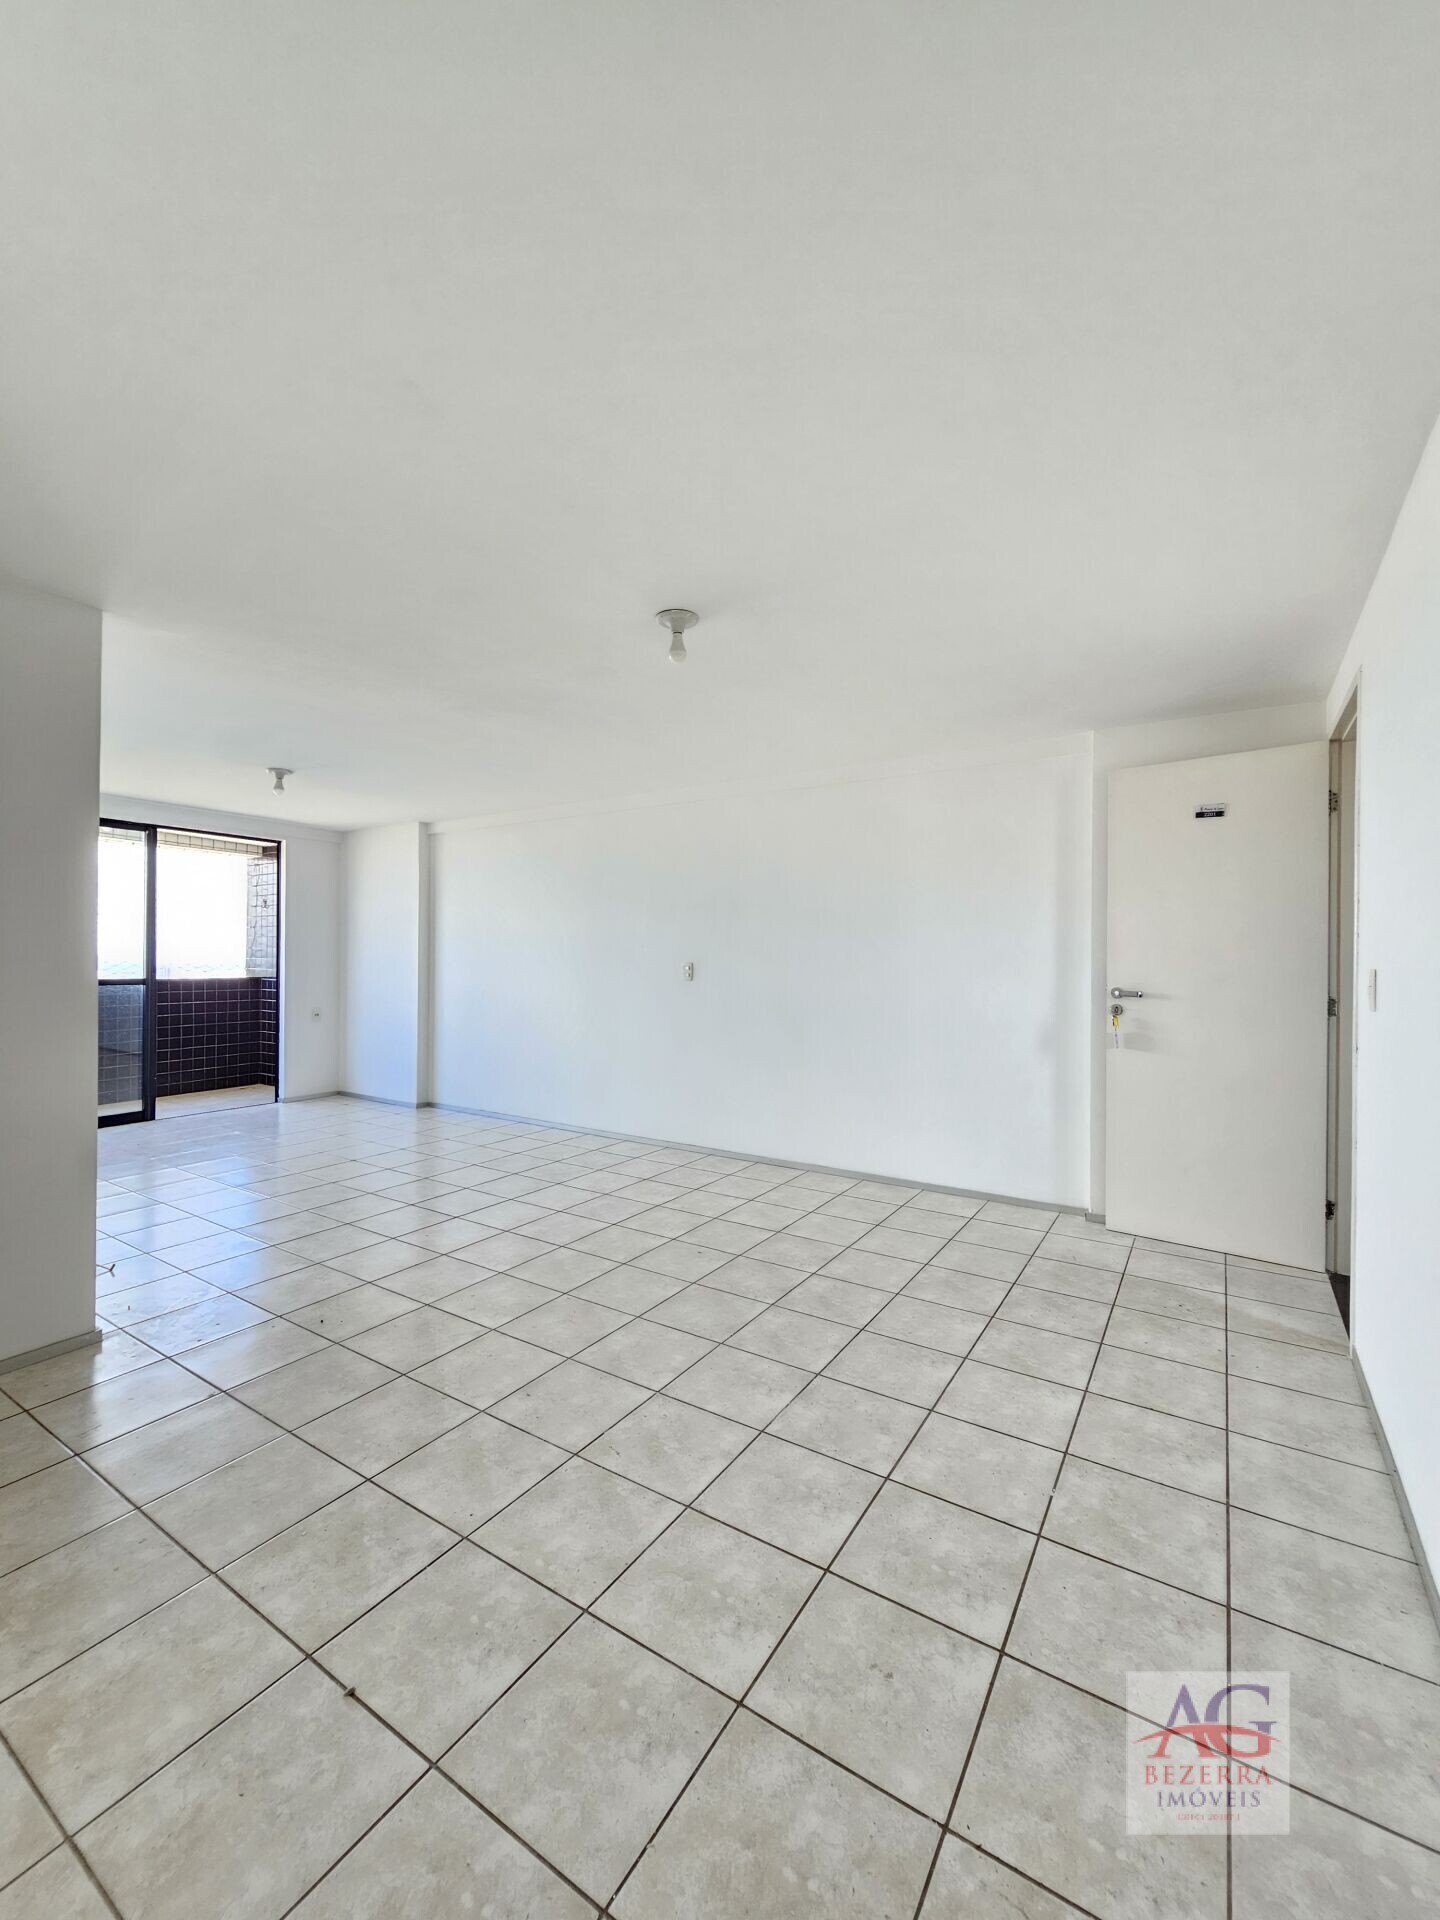 Apartamento, 3 quartos, 107 m² - Foto 1